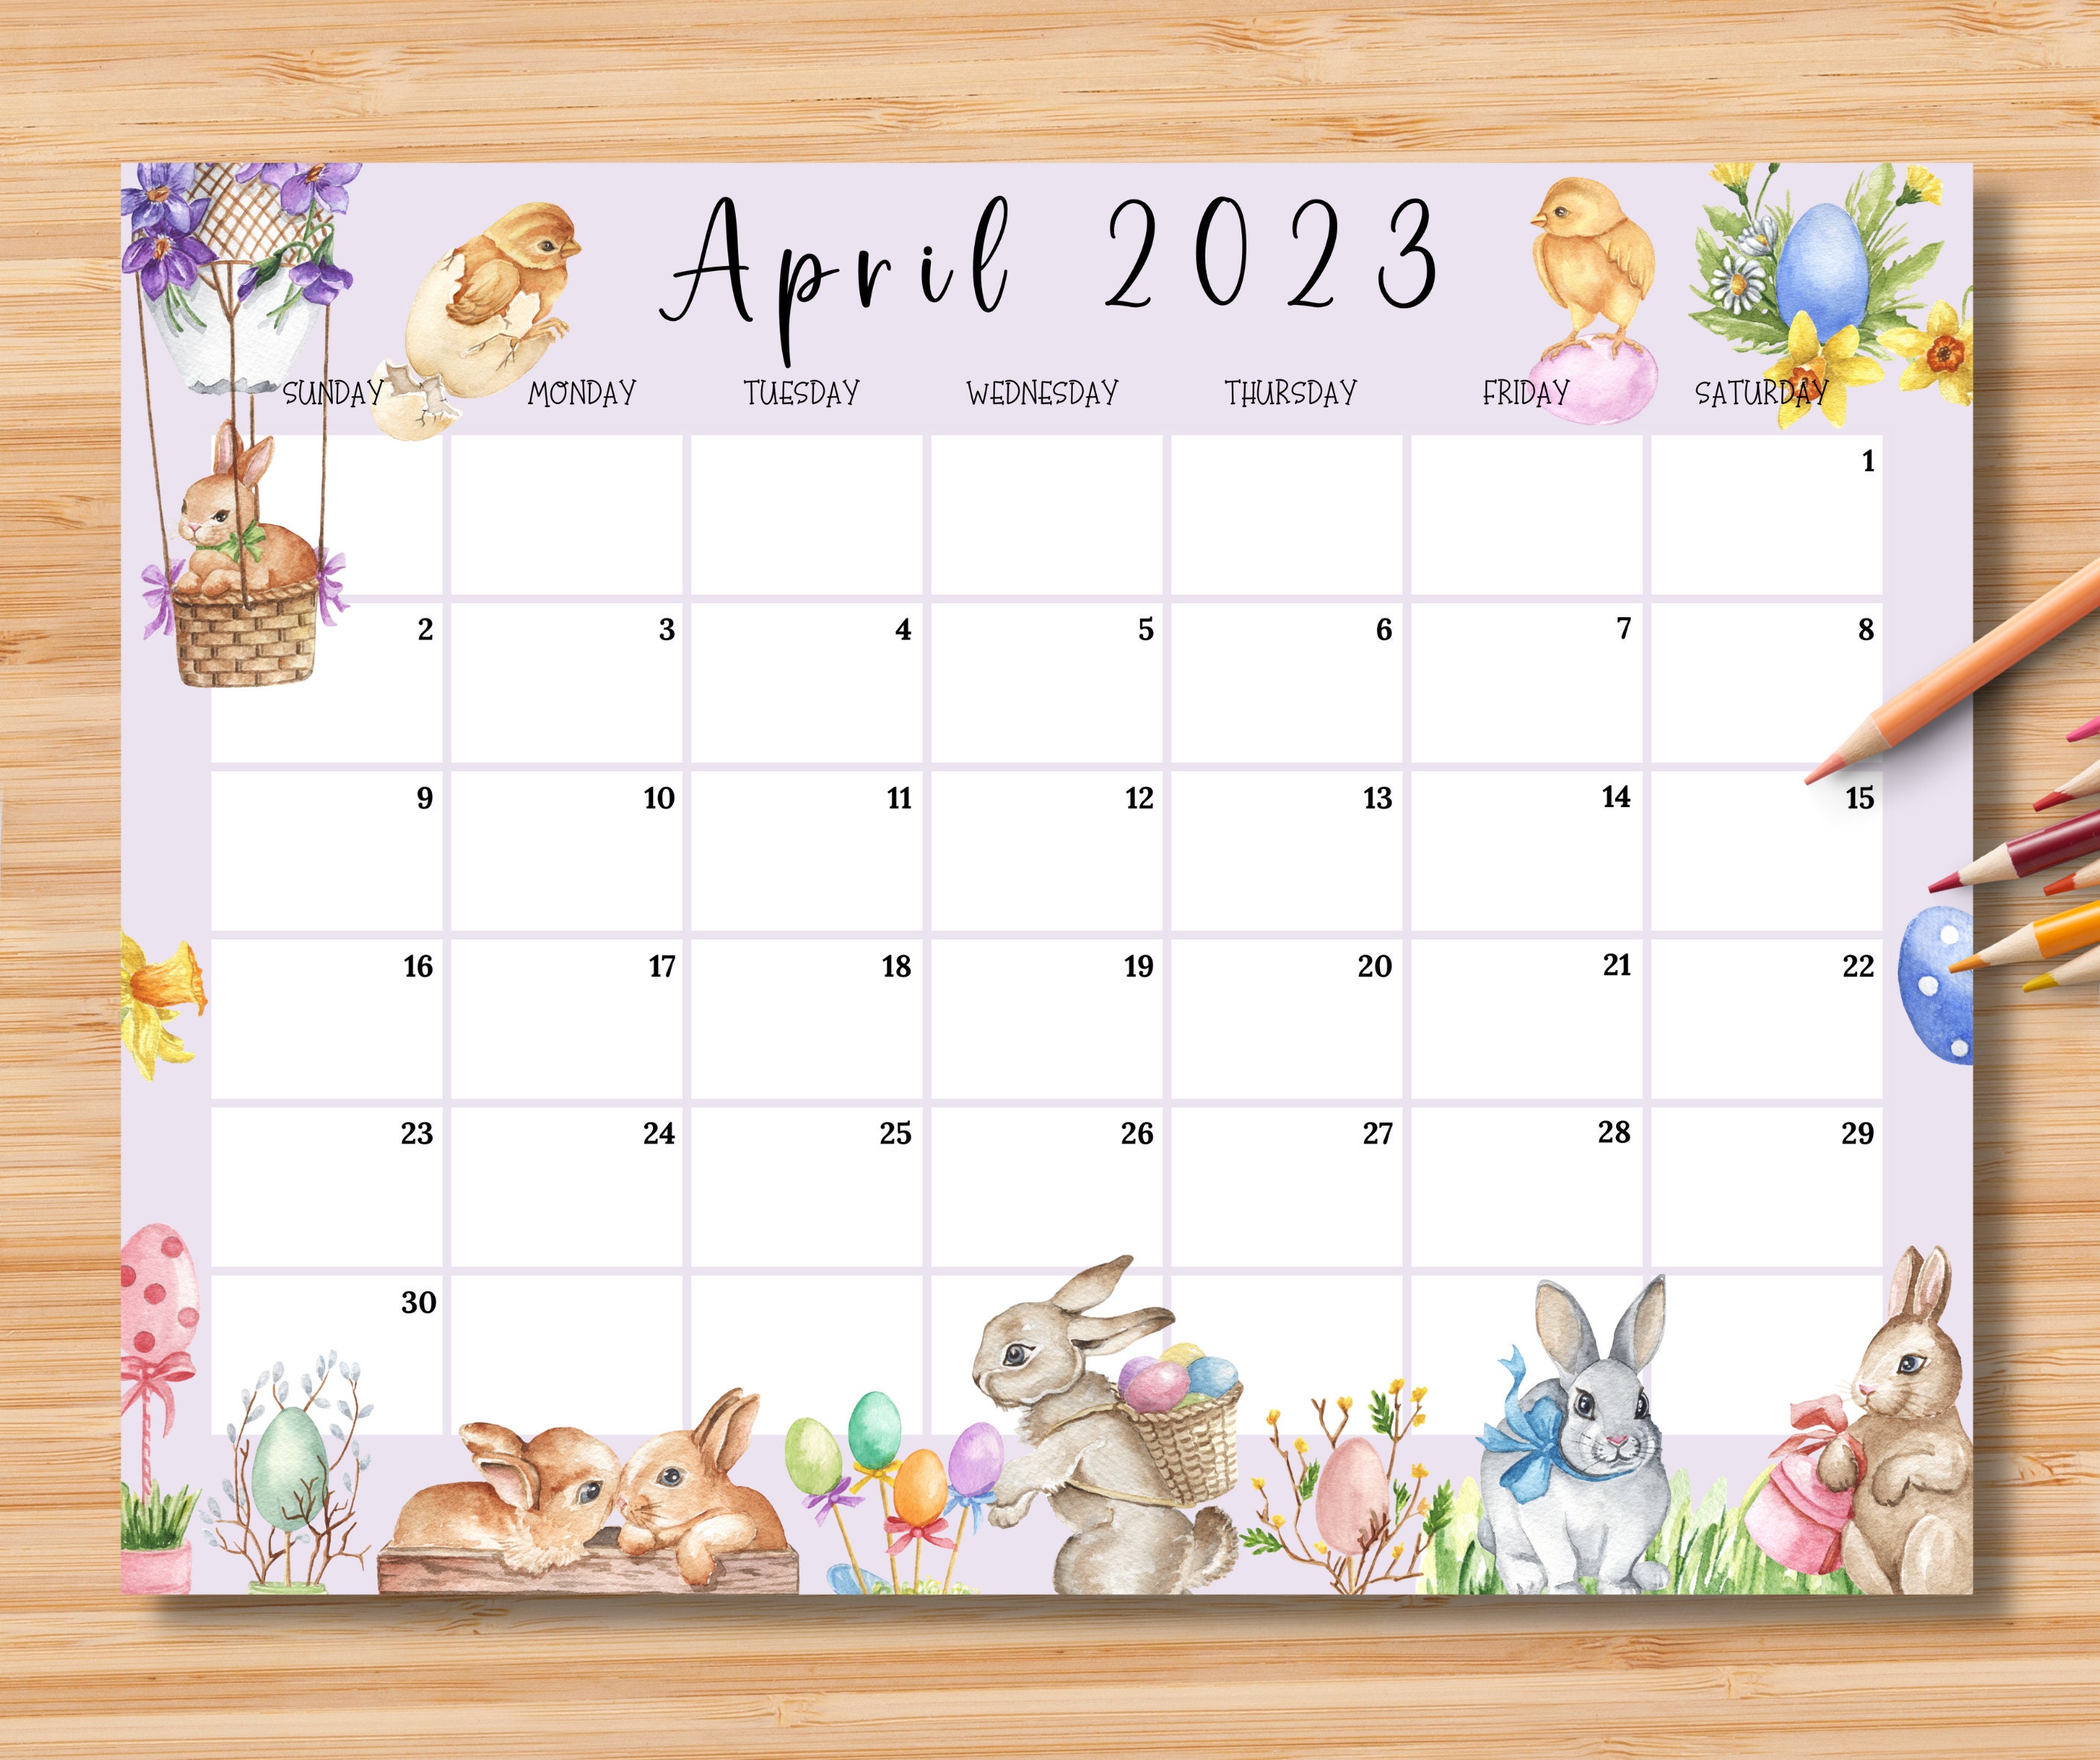 Calendar 2023 Easter Get Calendar 2023 Update